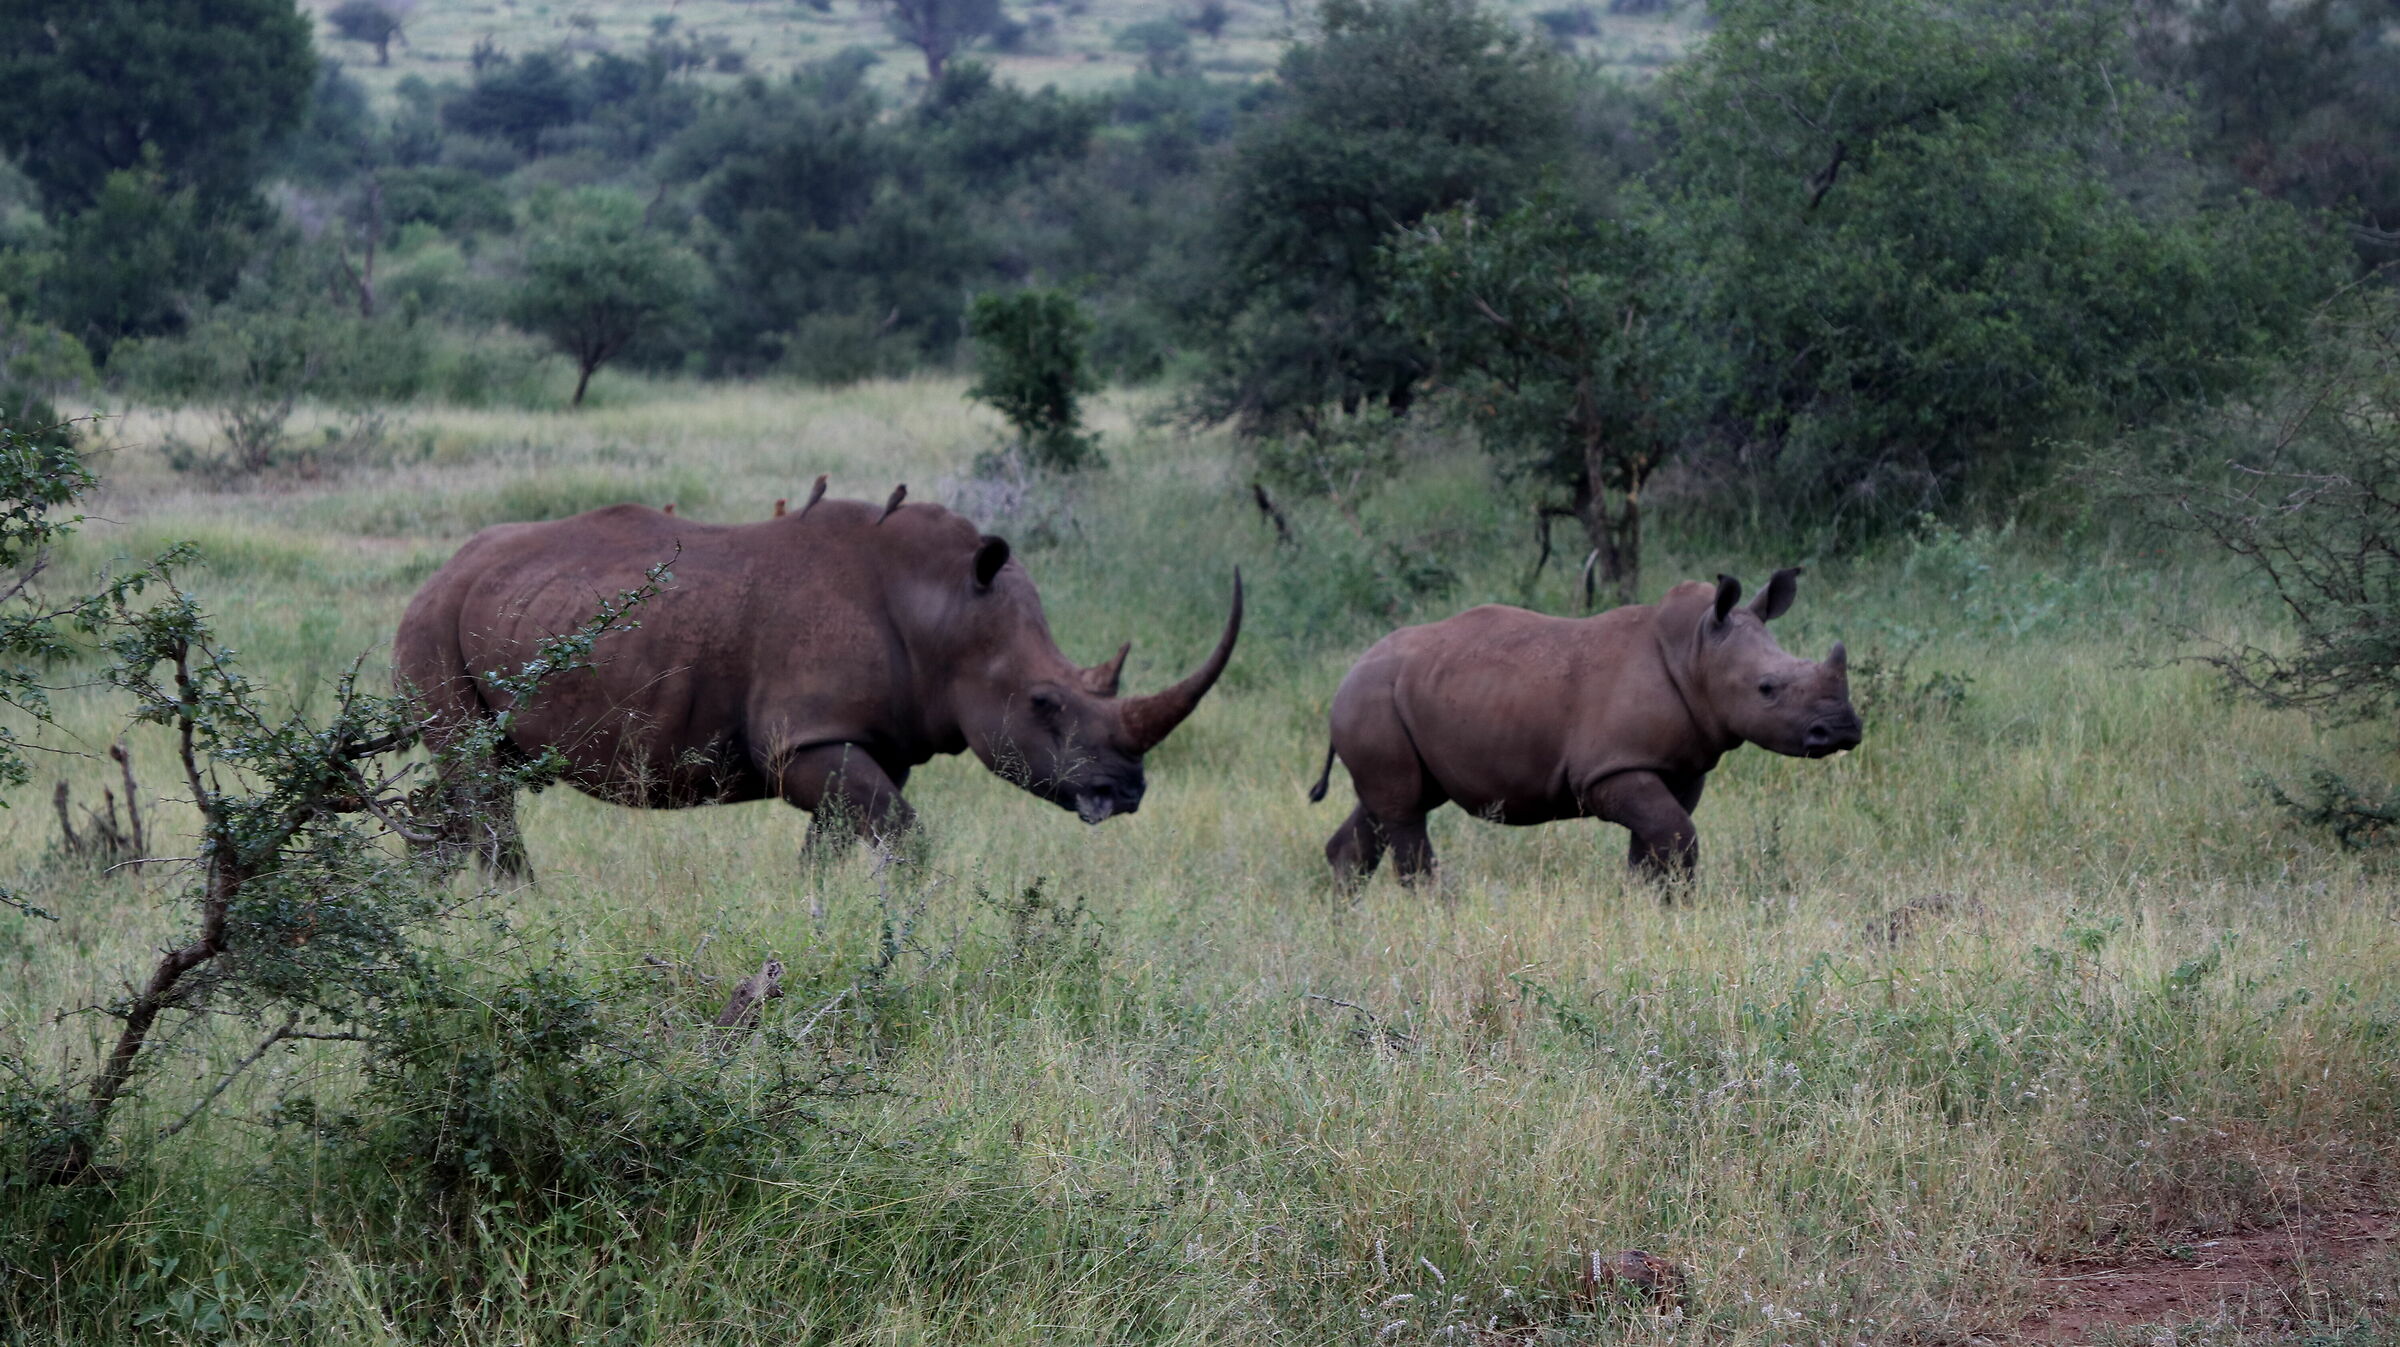 Rhinos walking!...